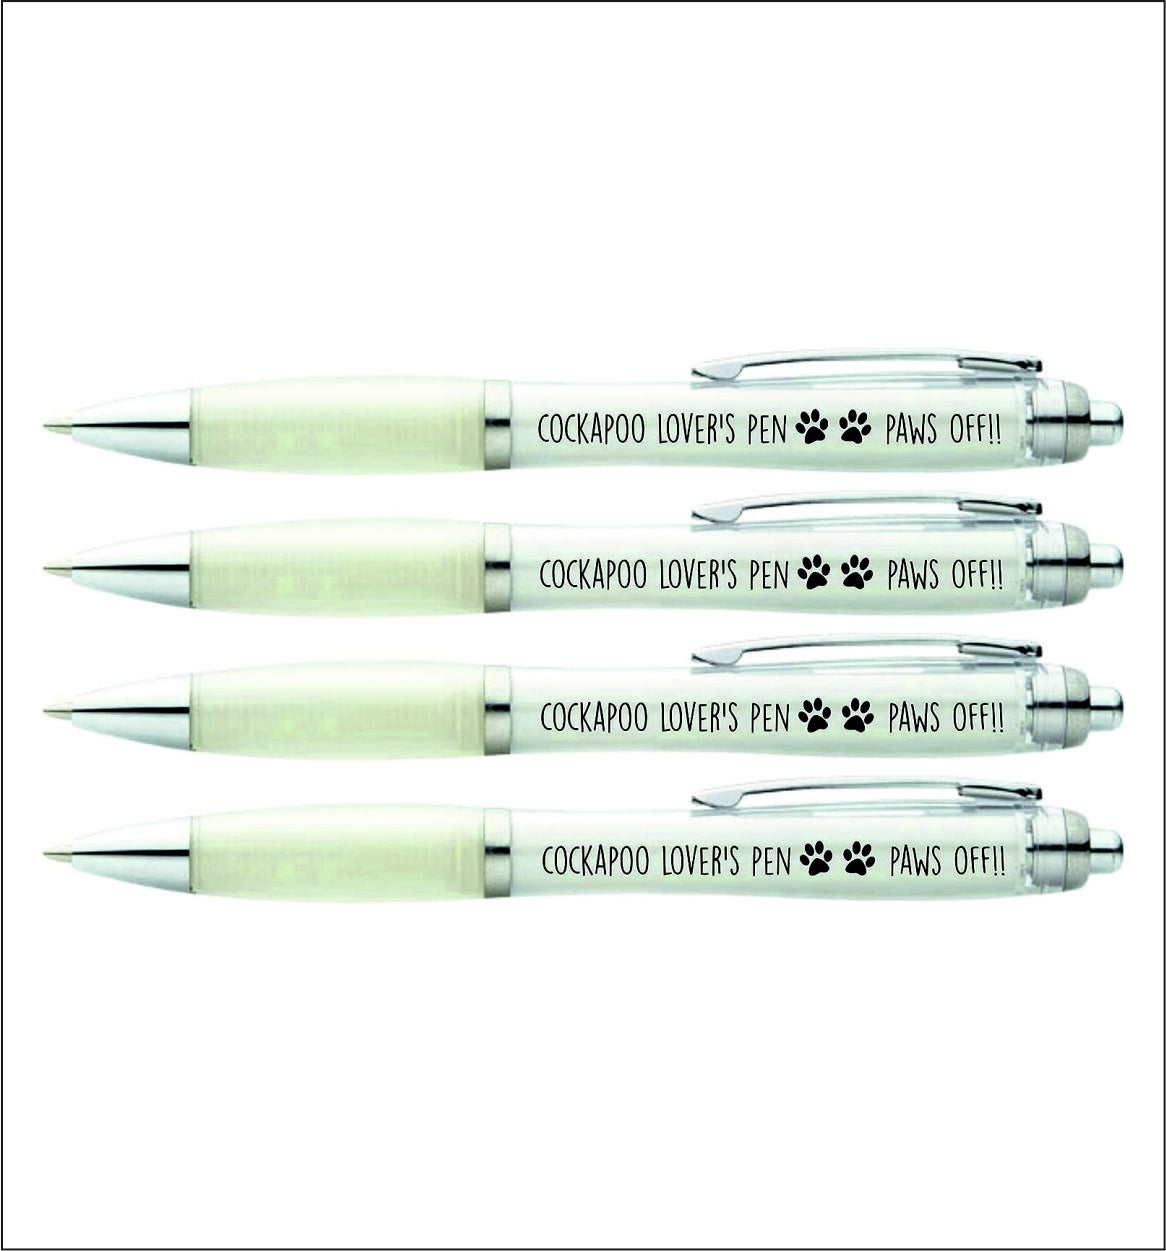 4 x Cockapoo lover's pen "HAND'S OFF"